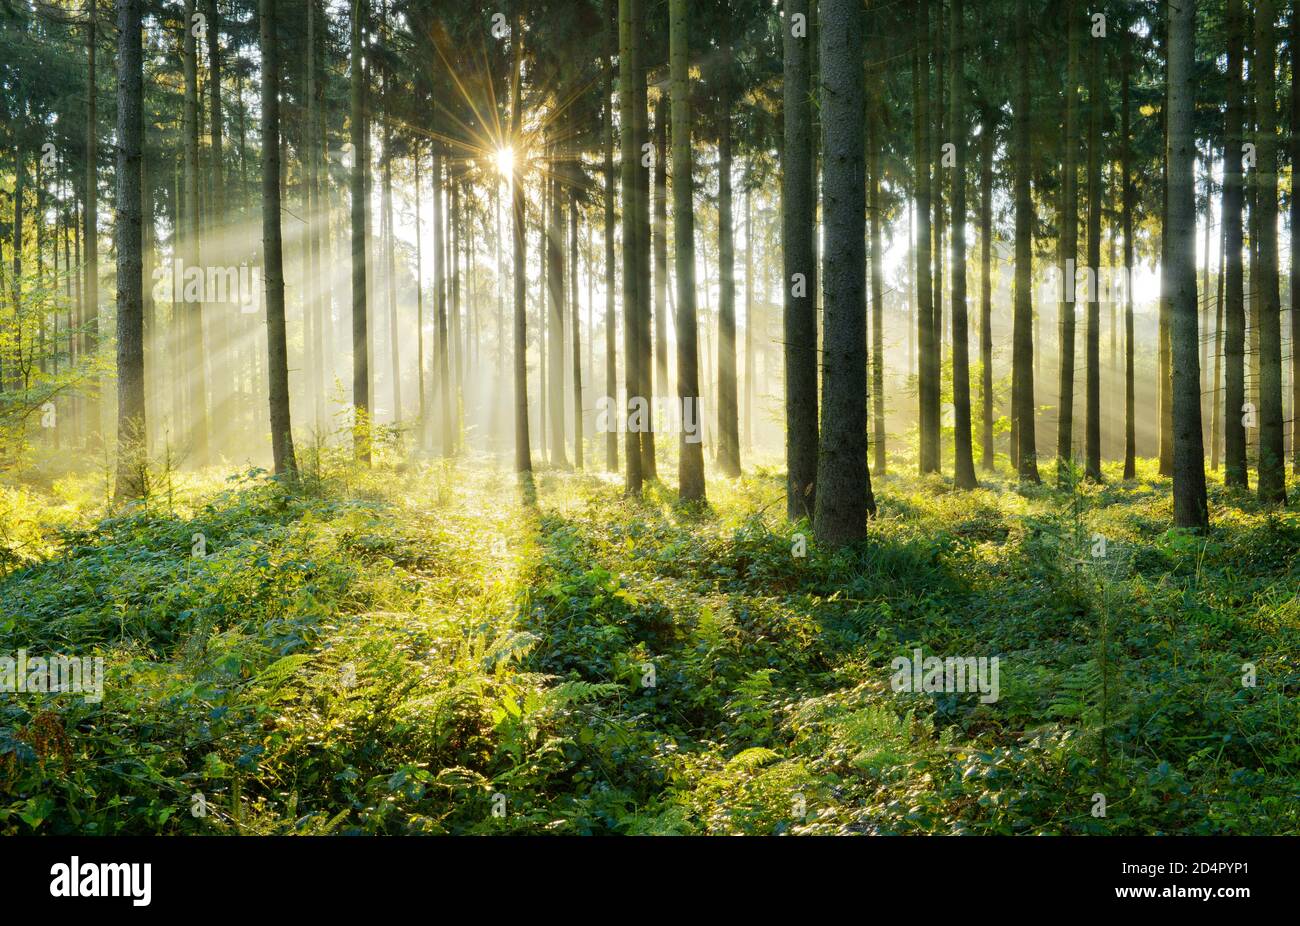 Bosque de abetos inundado de luz, sol brilla a través de la niebla, Flechtinger Höhenzug, Magdeburger Börde, Sajonia-Anhalt, Alemania, Europa Foto de stock